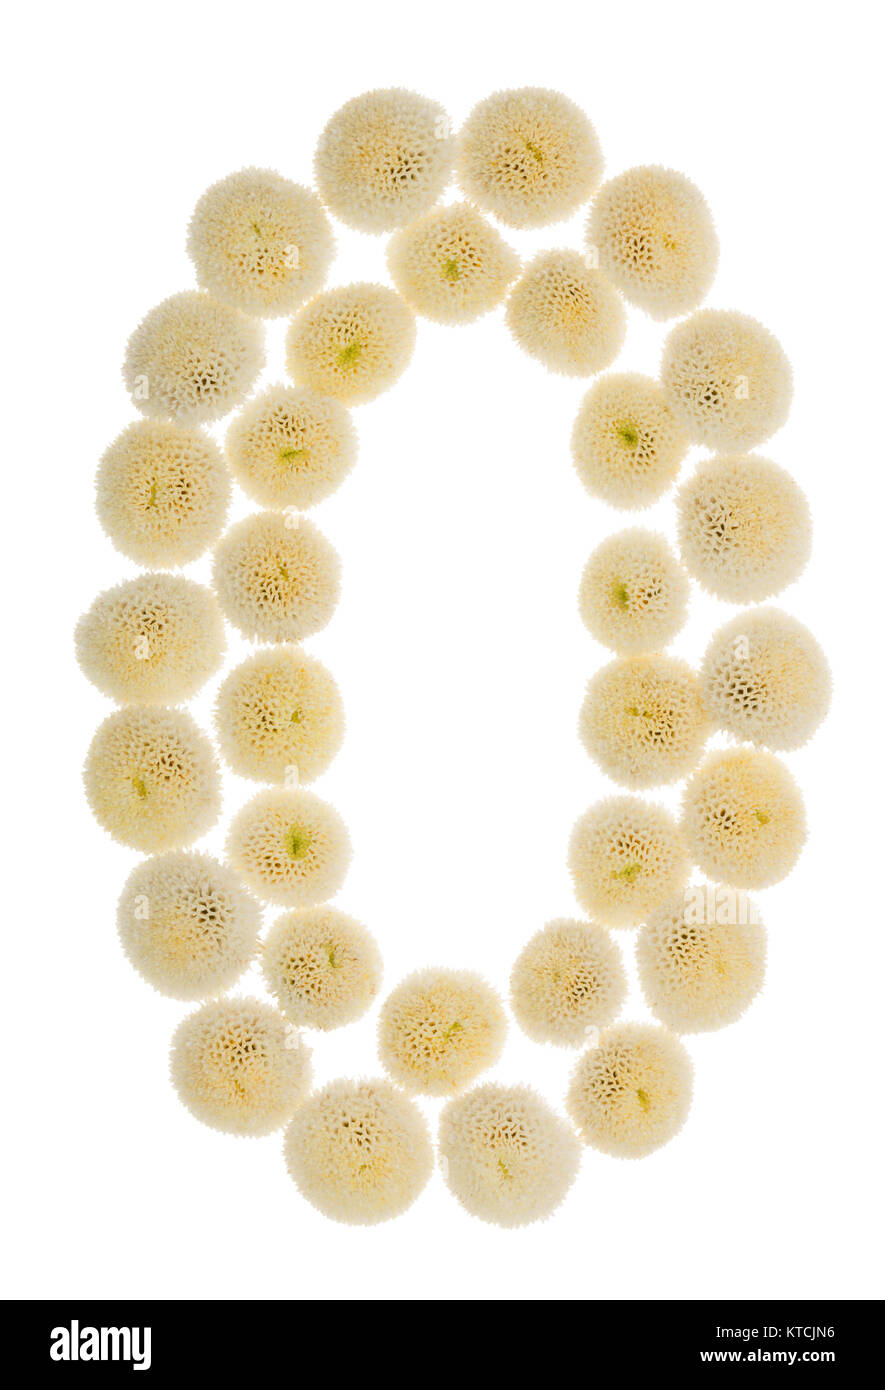 Chiffre arabe 0, zéro, à partir de crème fleurs de chrysanthème, isolé sur fond blanc Banque D'Images